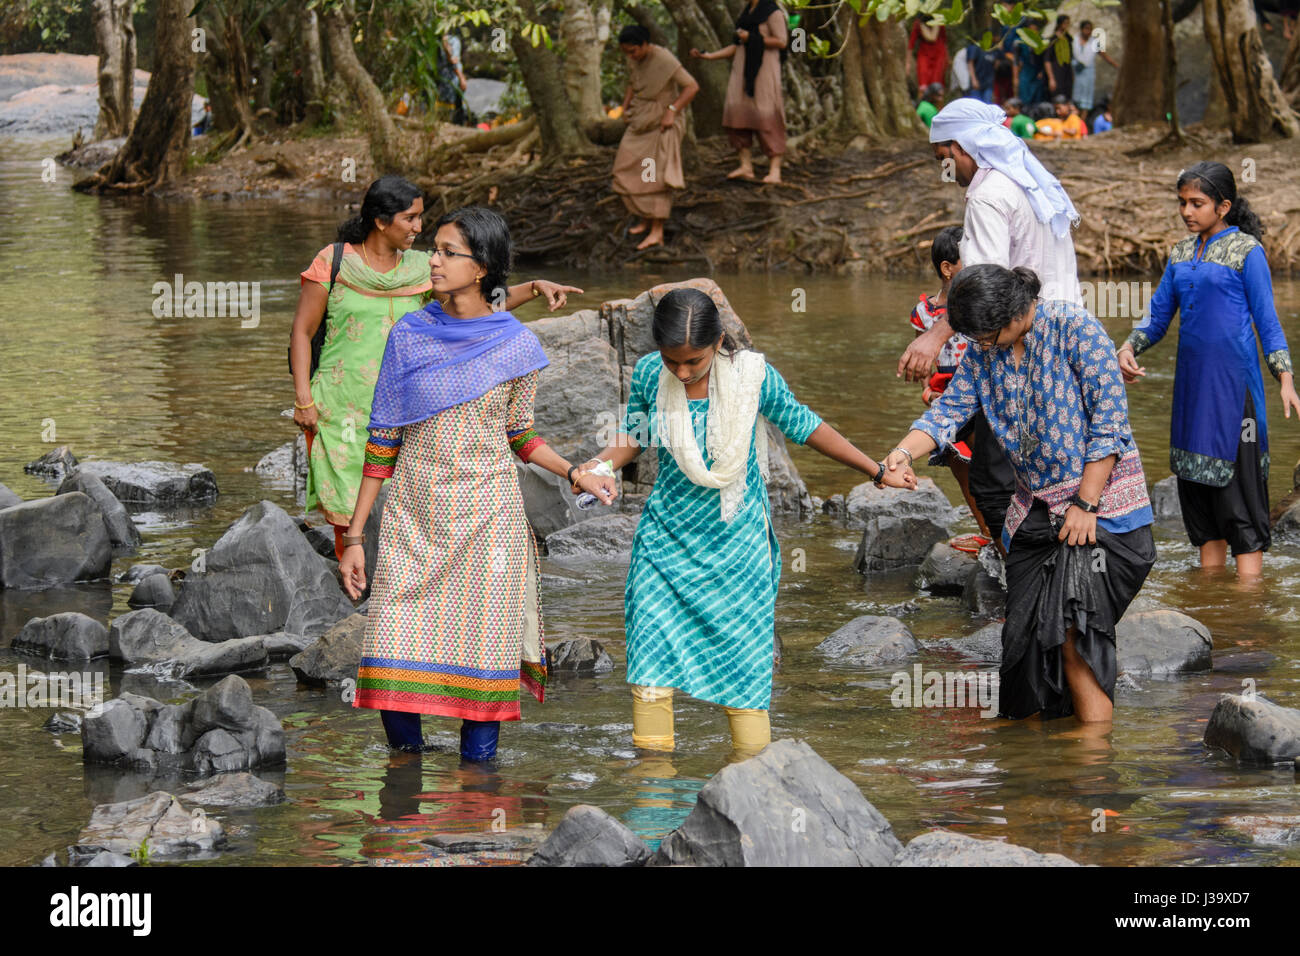 Les personnes jouant dans la rivière pour célébrer la Journée de la République de l'Inde à Kuruva Dweep (Kuruva Island), le district de Wayanad, Kerala, Inde du Sud, en Asie du Sud Banque D'Images